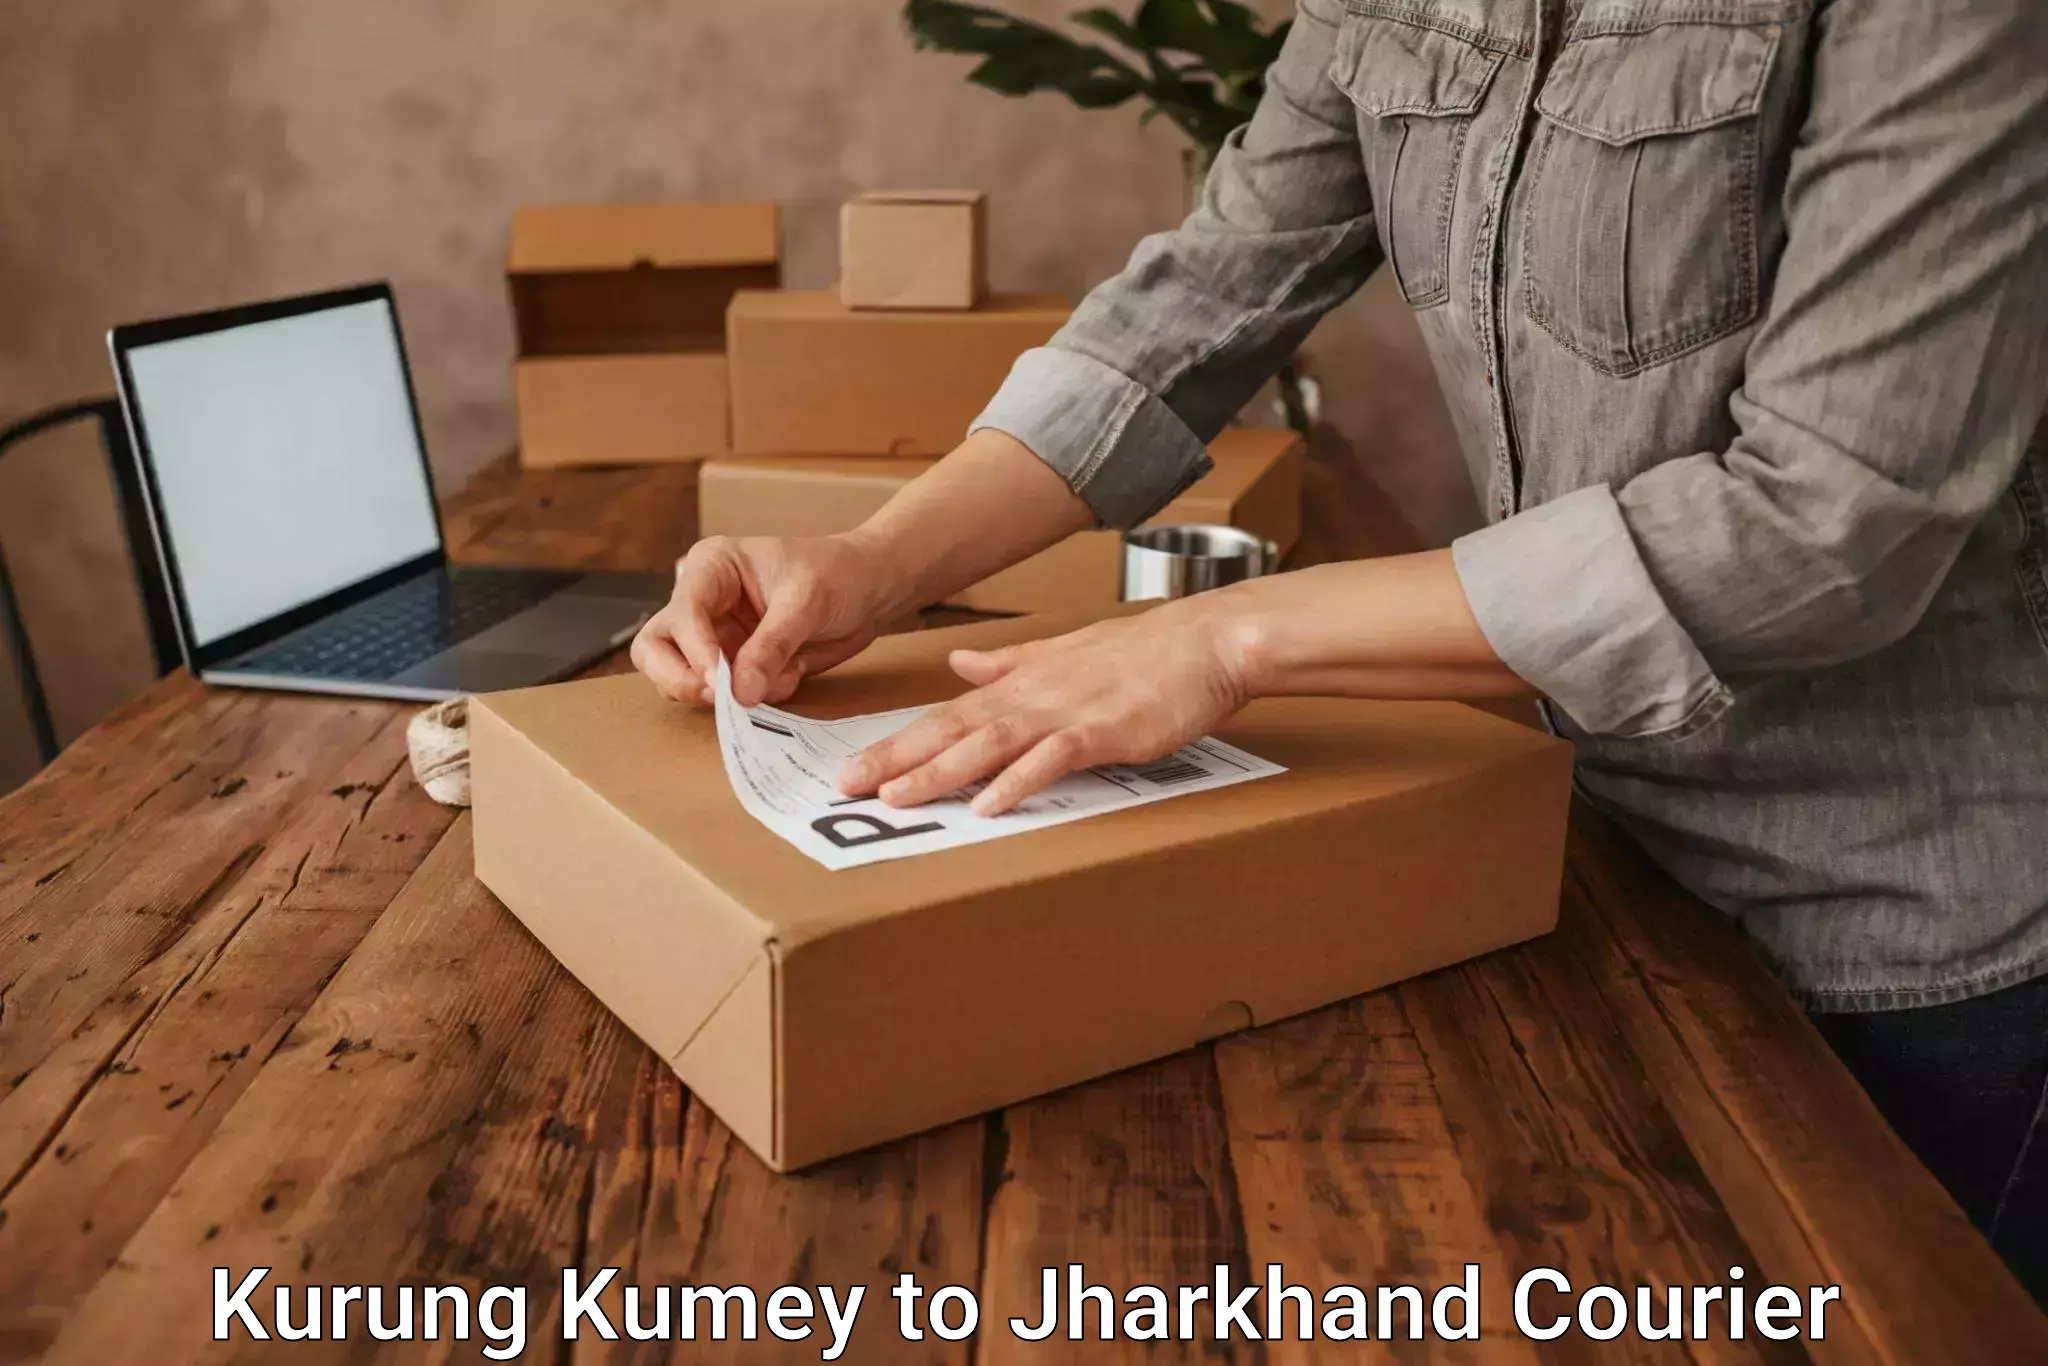 Express courier facilities Kurung Kumey to Jamshedpur